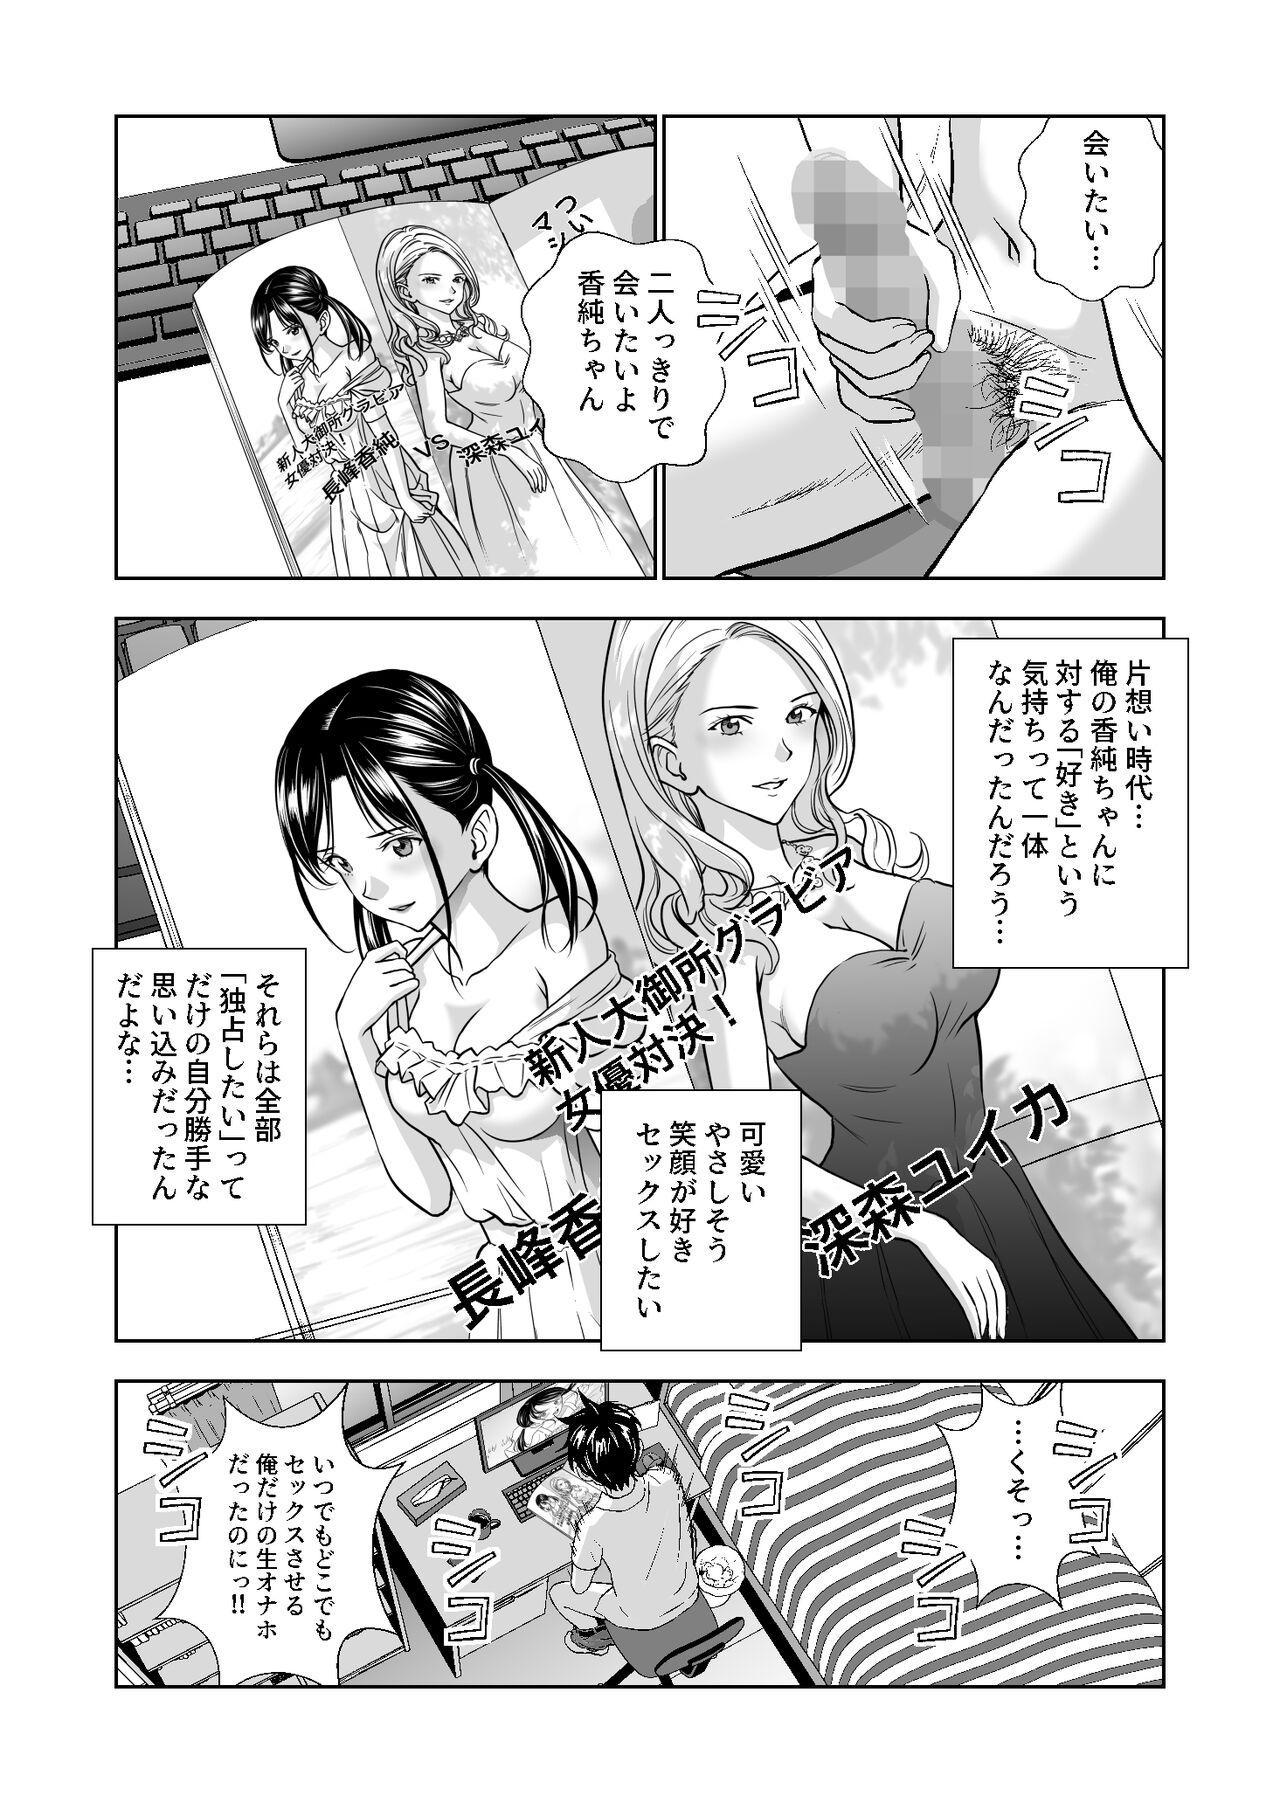 Staxxx 春くらべ4 - Original Hot Teen - Page 3